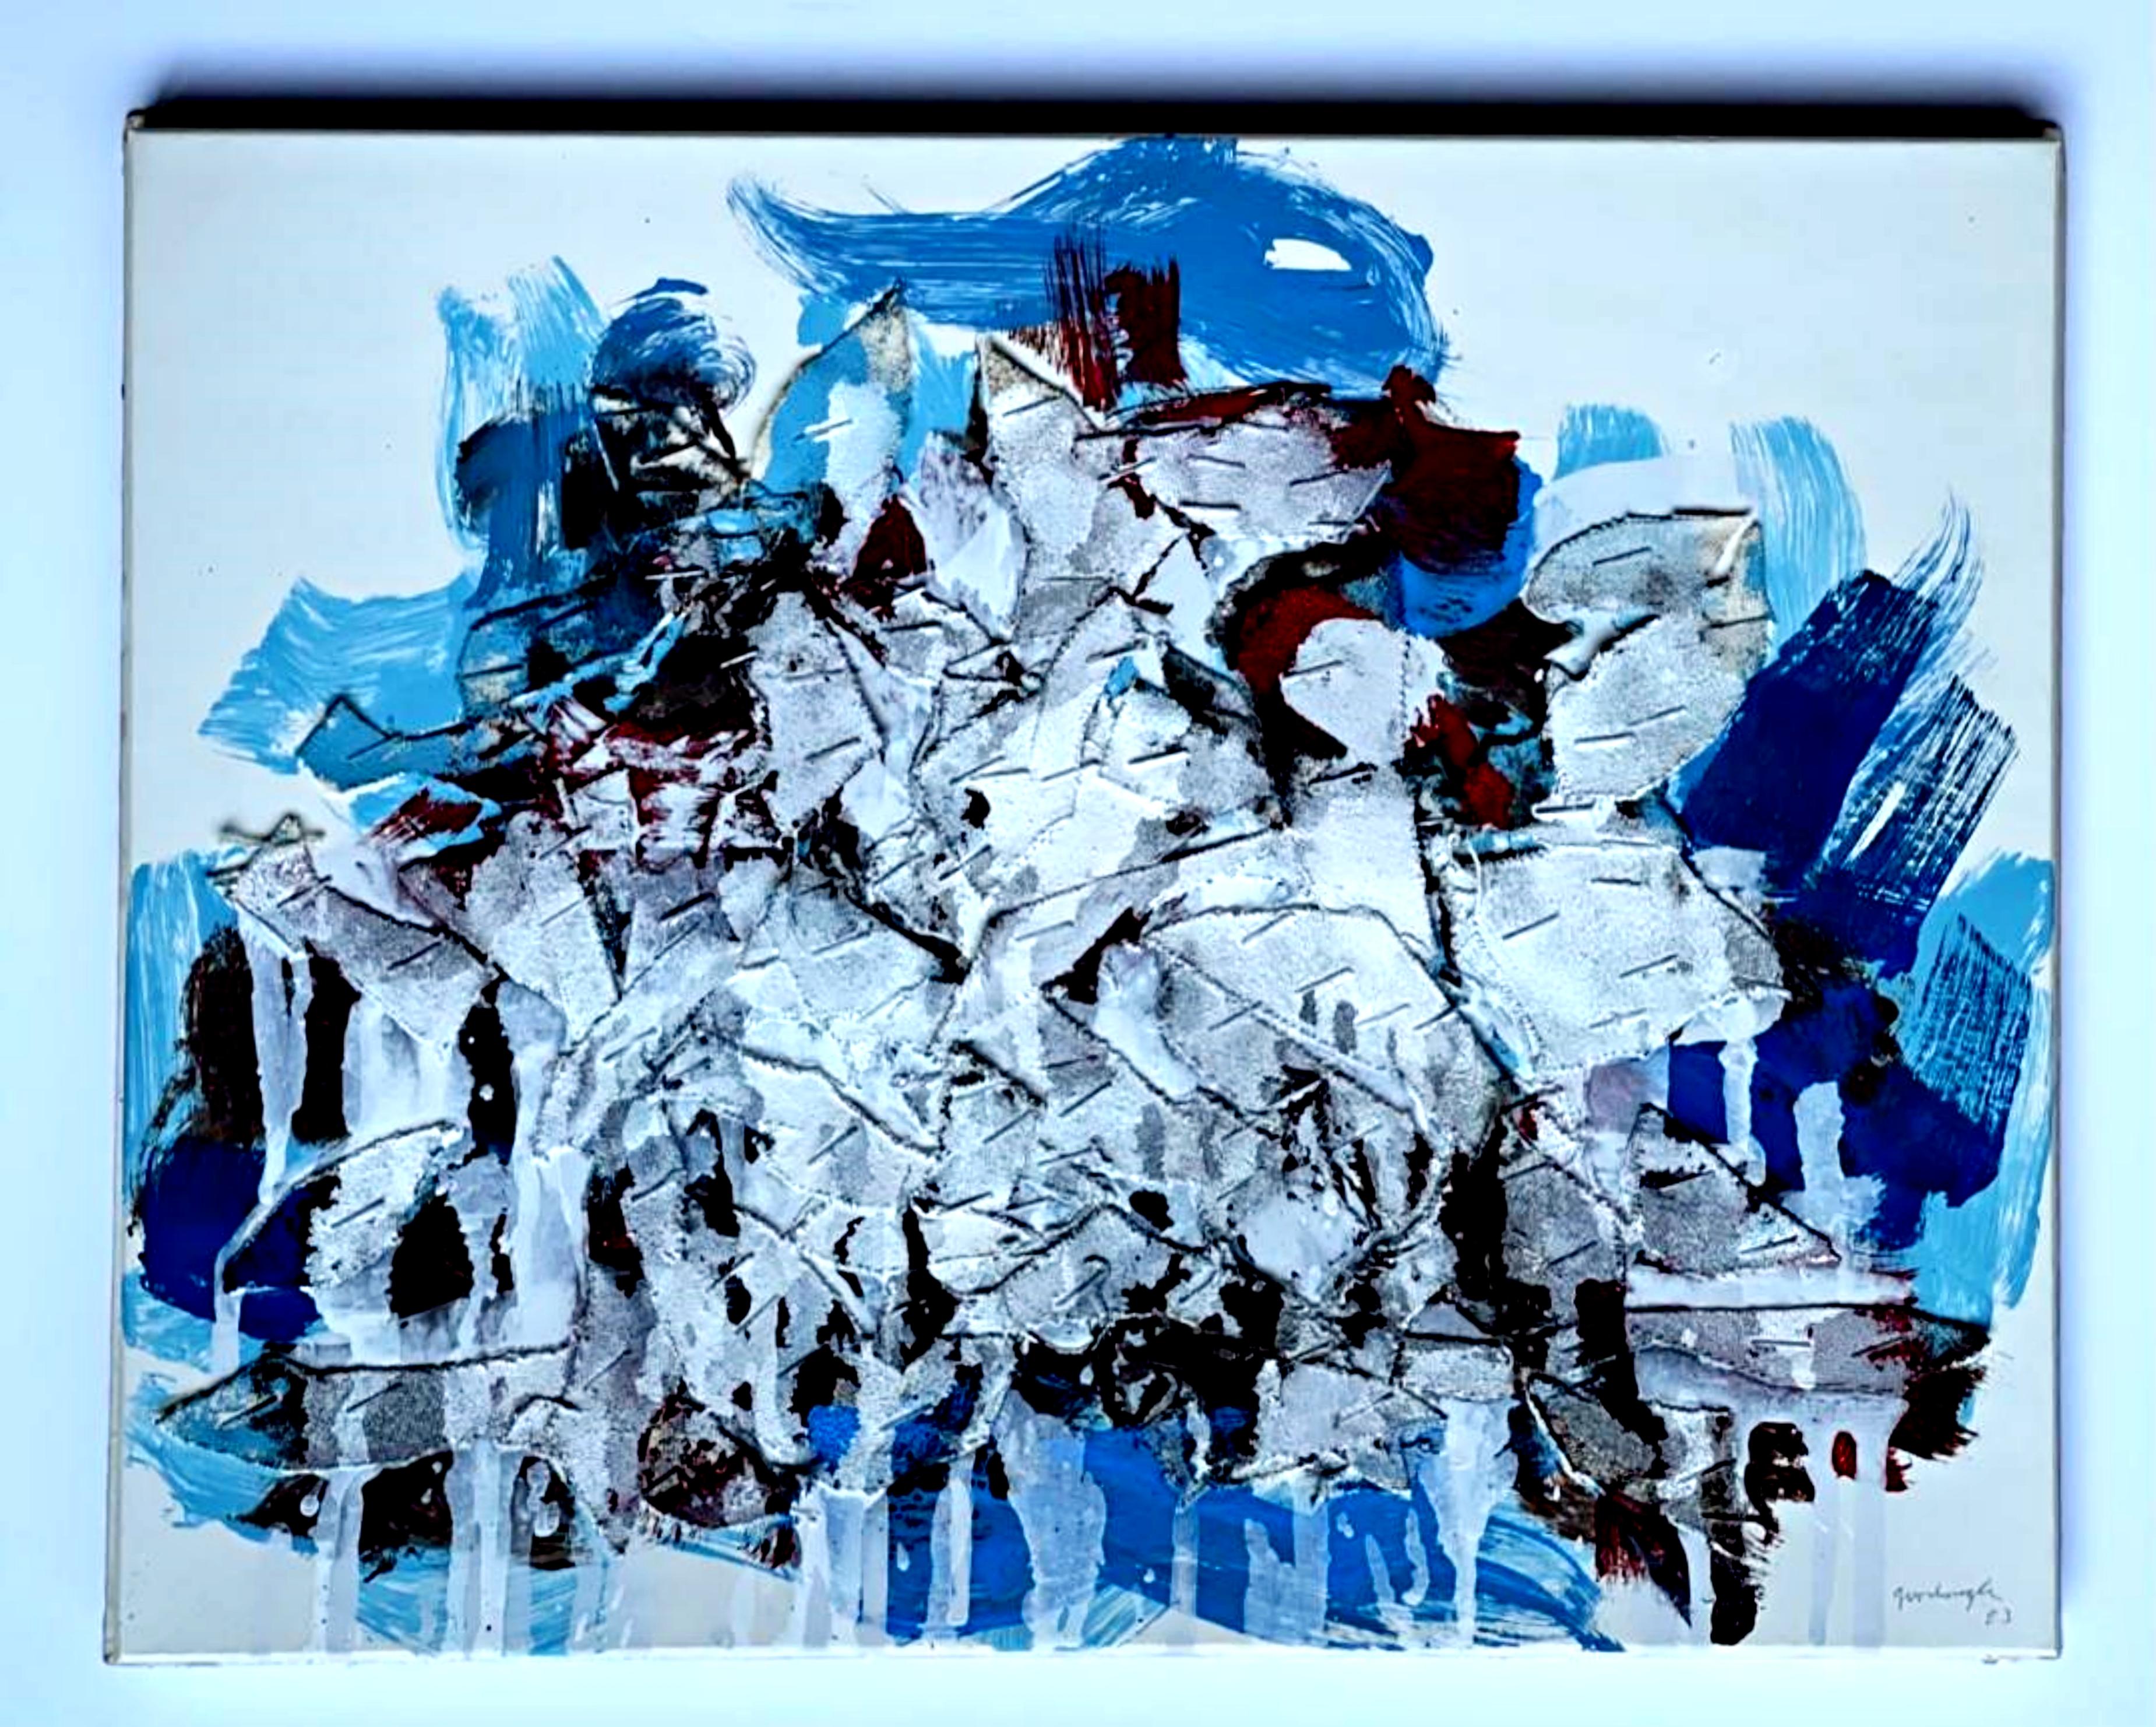 Robert Goodnough
Collage-Leinwand-Gemälde III, 1983
Collage aus bemalter Leinwand auf Karton (zweimal signiert und dem Künstler und Kurator Matthew Rose gewidmet)
Signiert auf der Vorderseite des Kunstwerks; auf der Rückseite des aufgeklebten